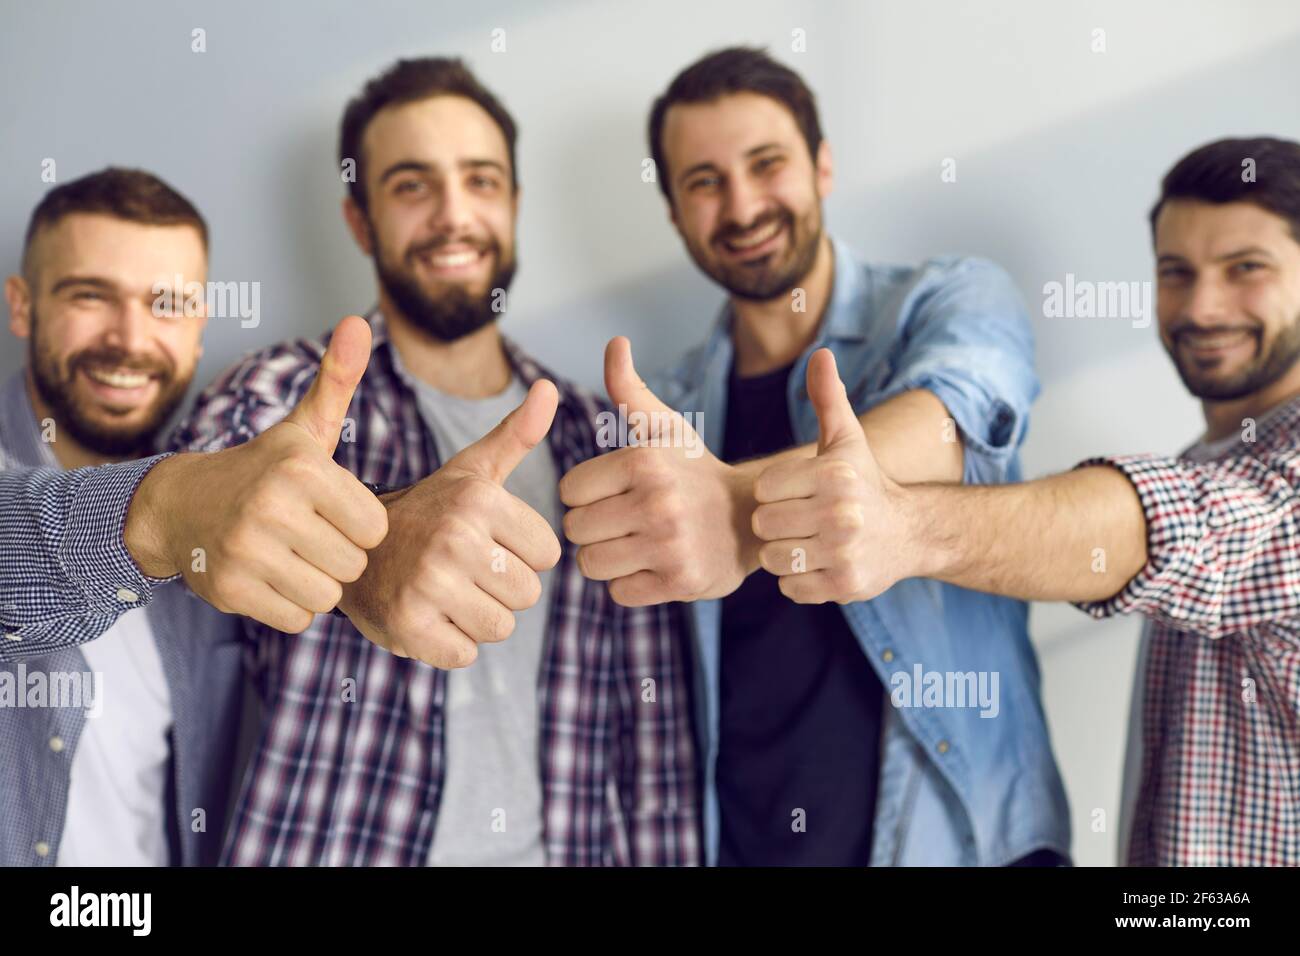 Gli amici maschili mostrano piacere e danno un feedback positivo mostrando i pollici contro la parete grigia. Foto Stock